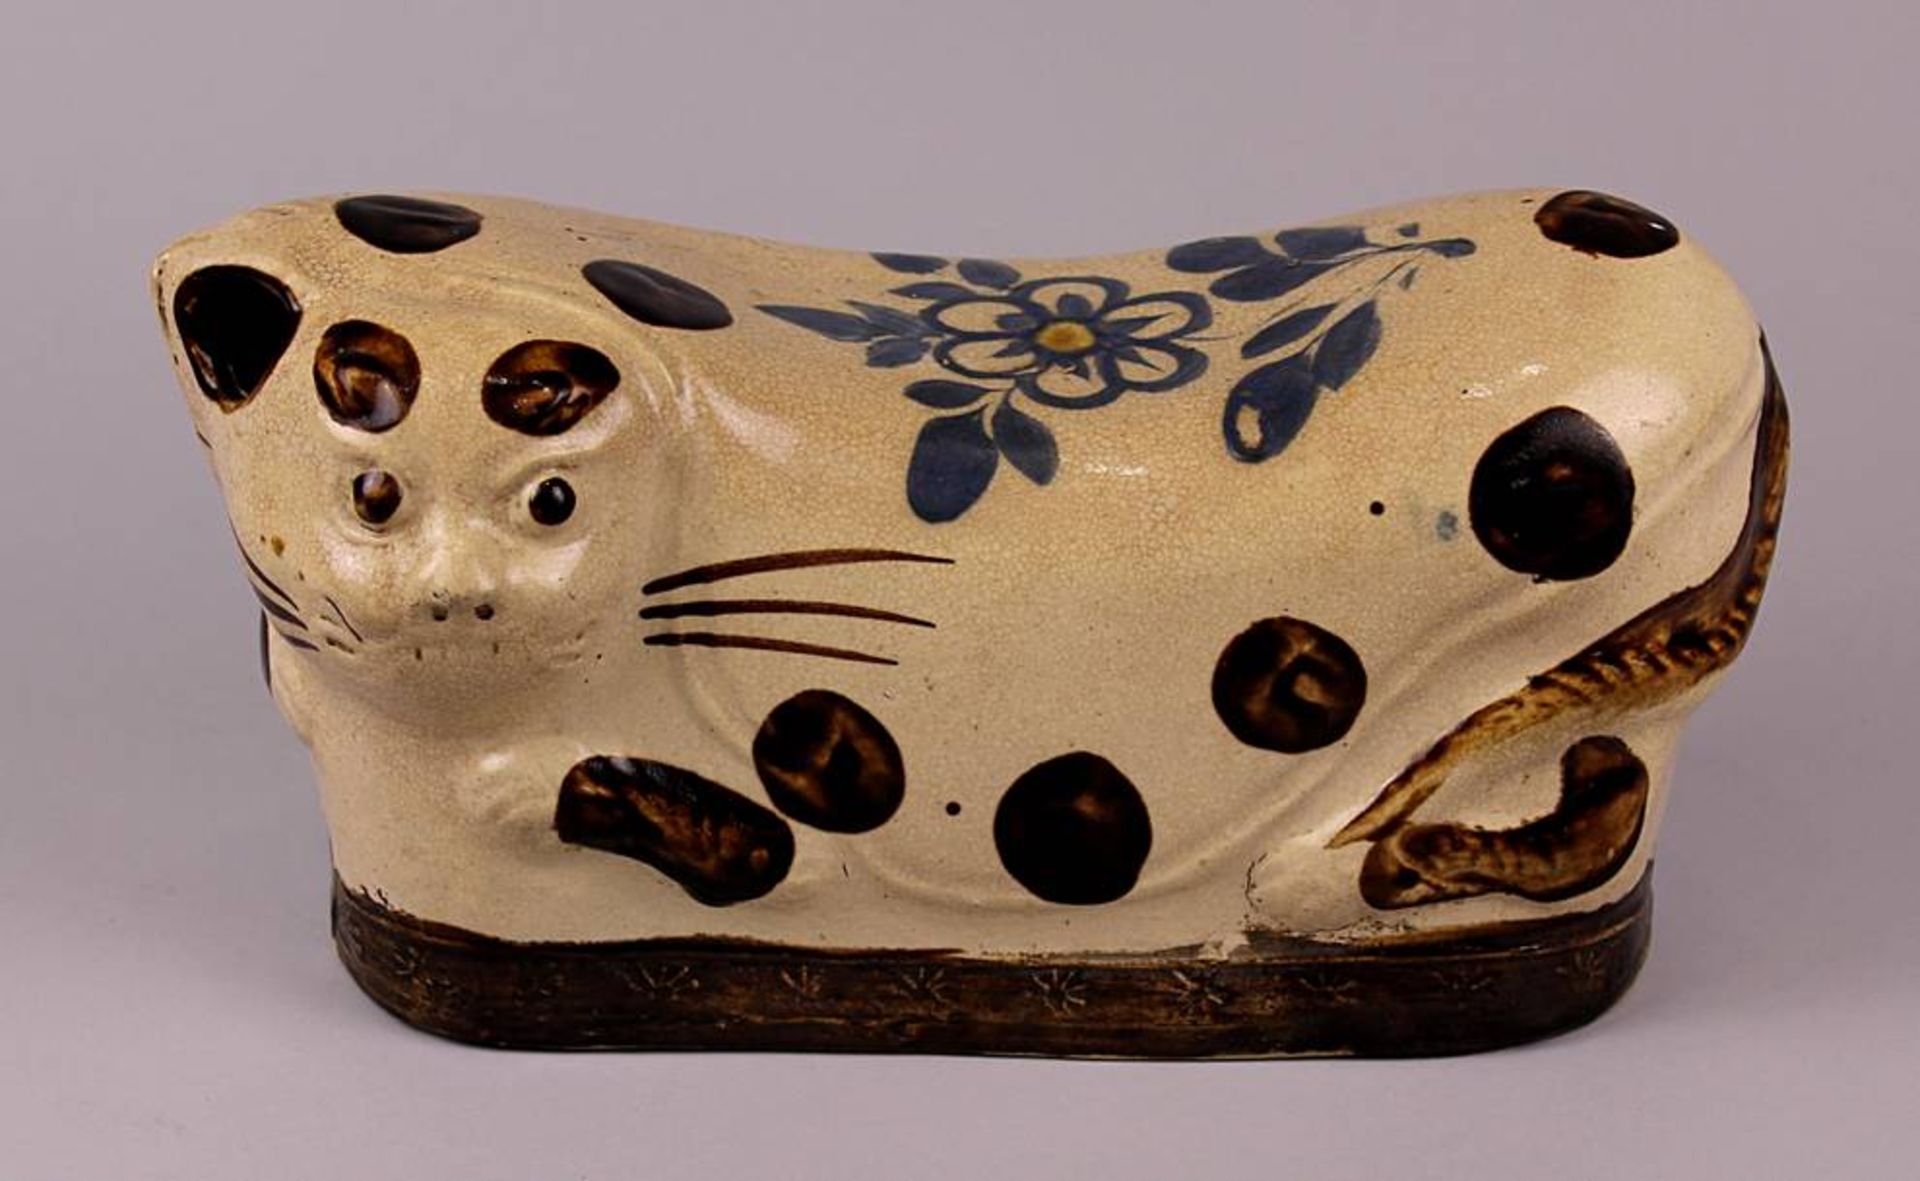 Chin. Nackenstütze in Form einer Katze um 1890. Keramik, beige und braun glasiert, blau gemaltes